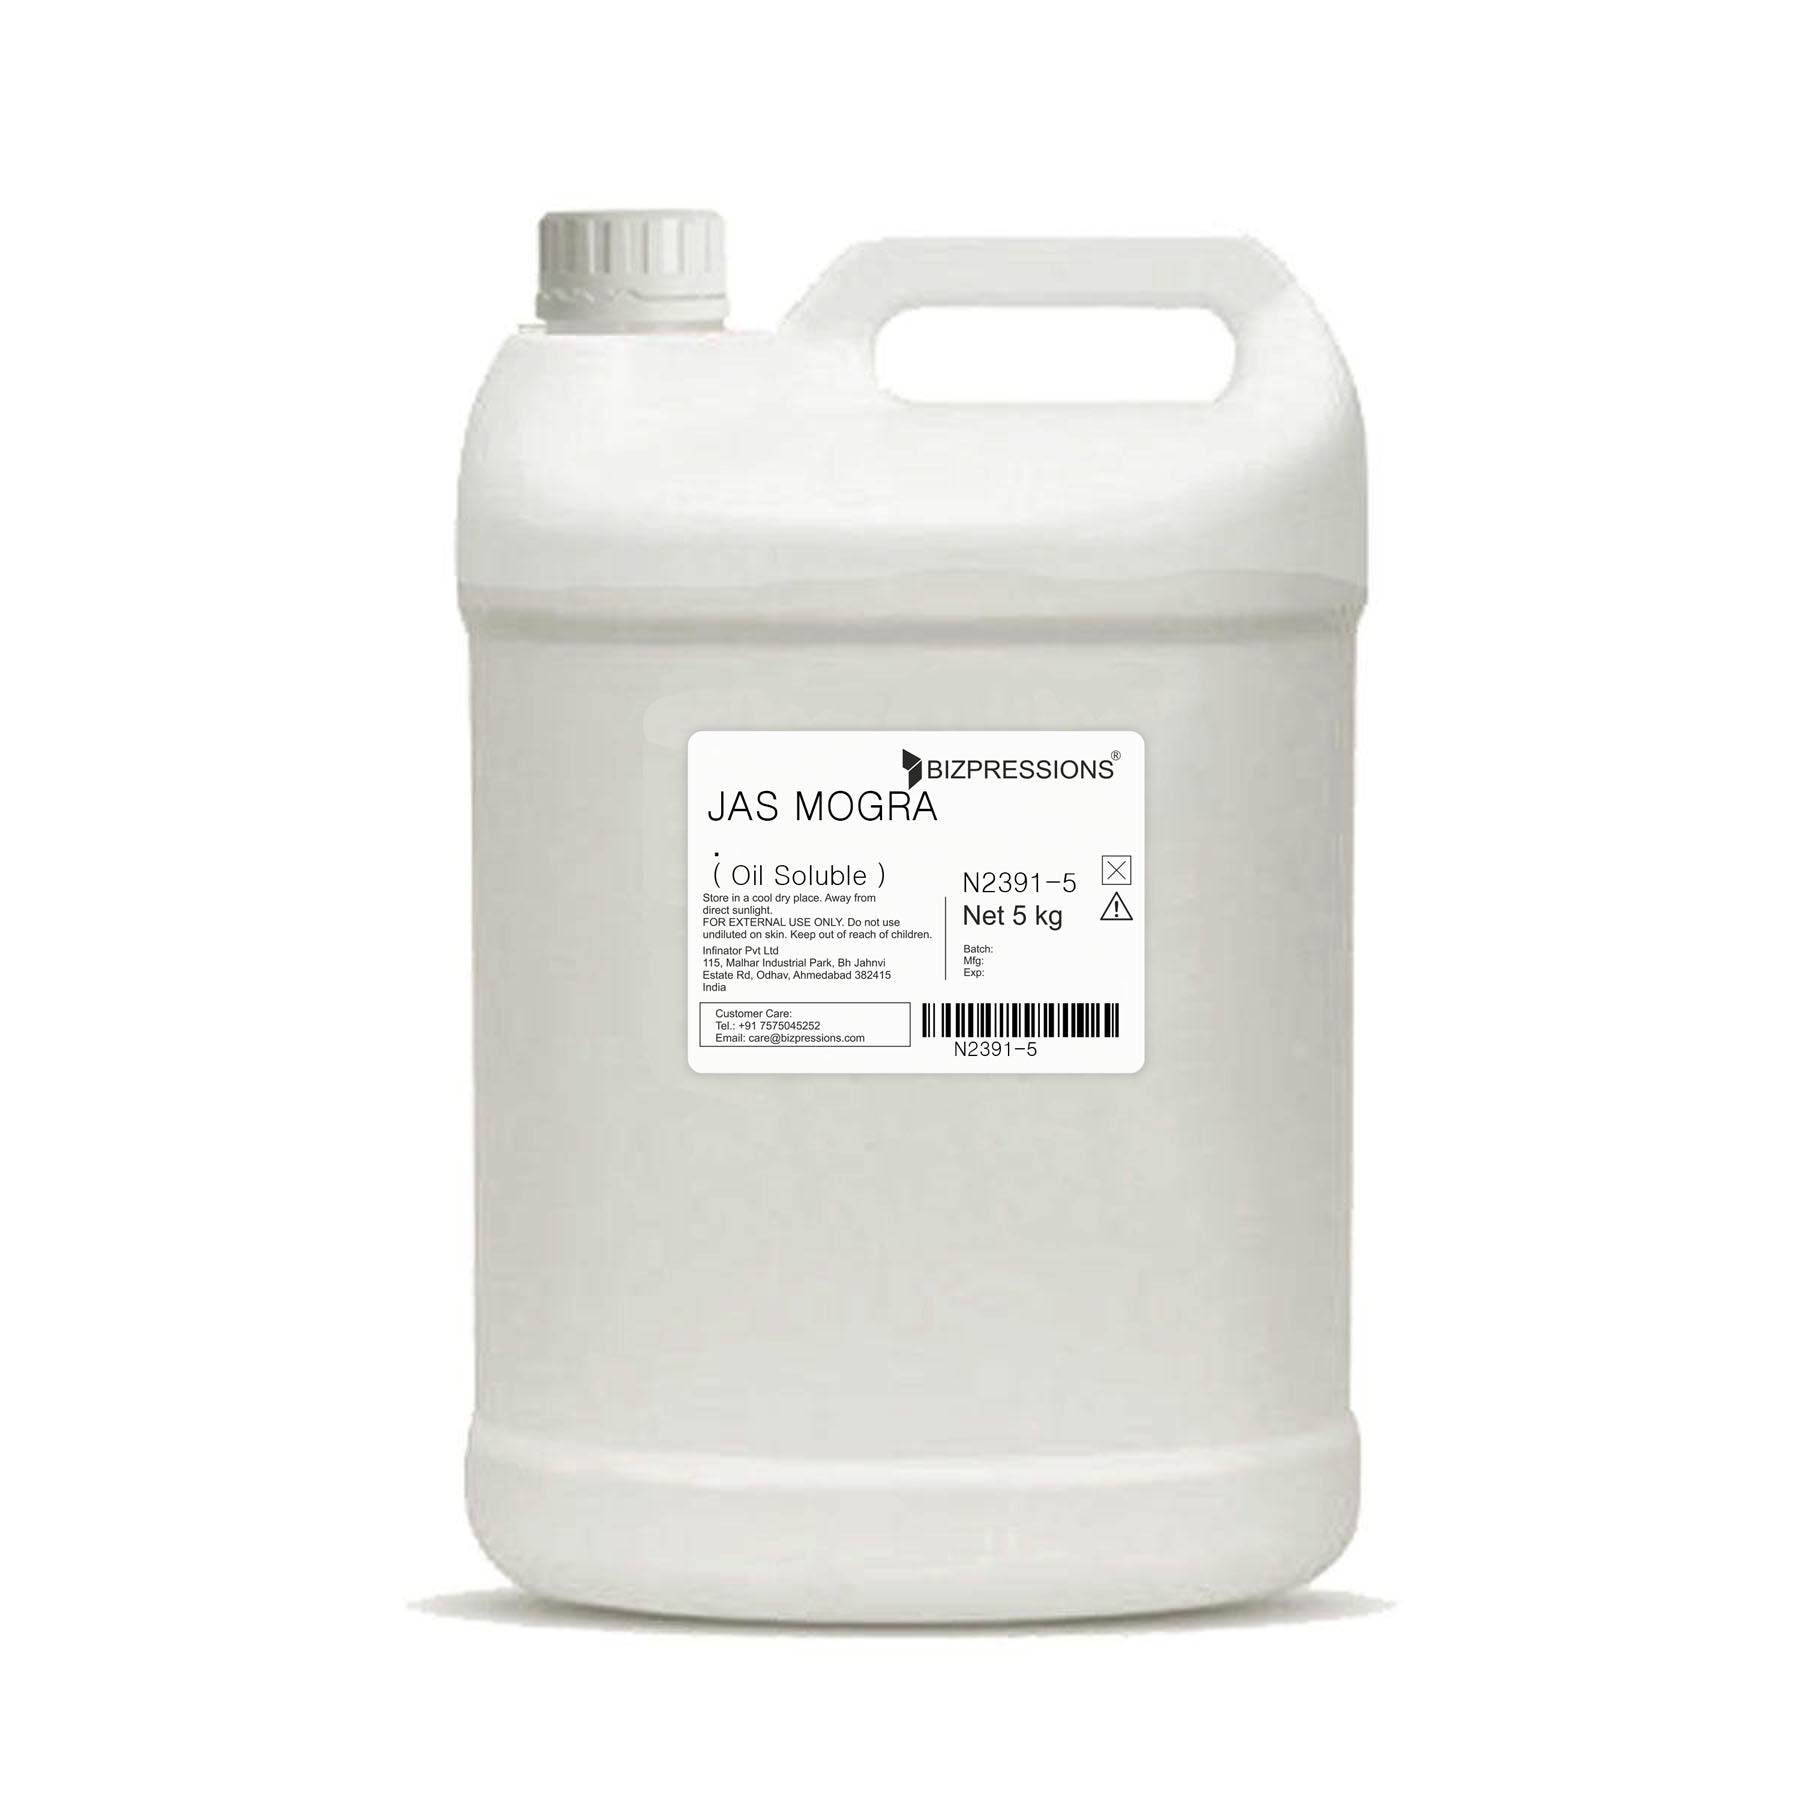 JAS MOGRA - Fragrance ( Oil Soluble ) - 5 kg